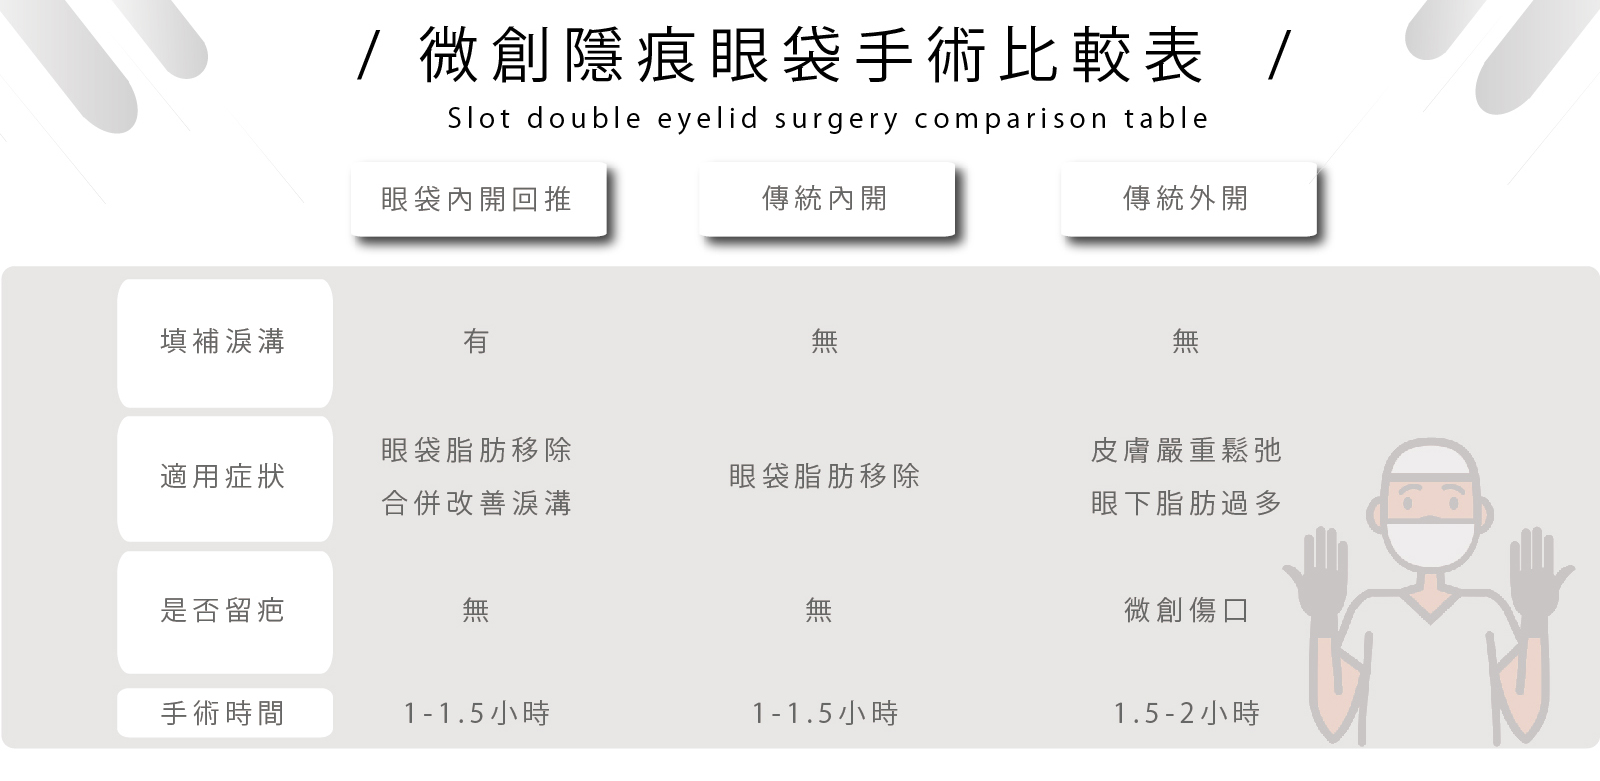 台北眼袋手術